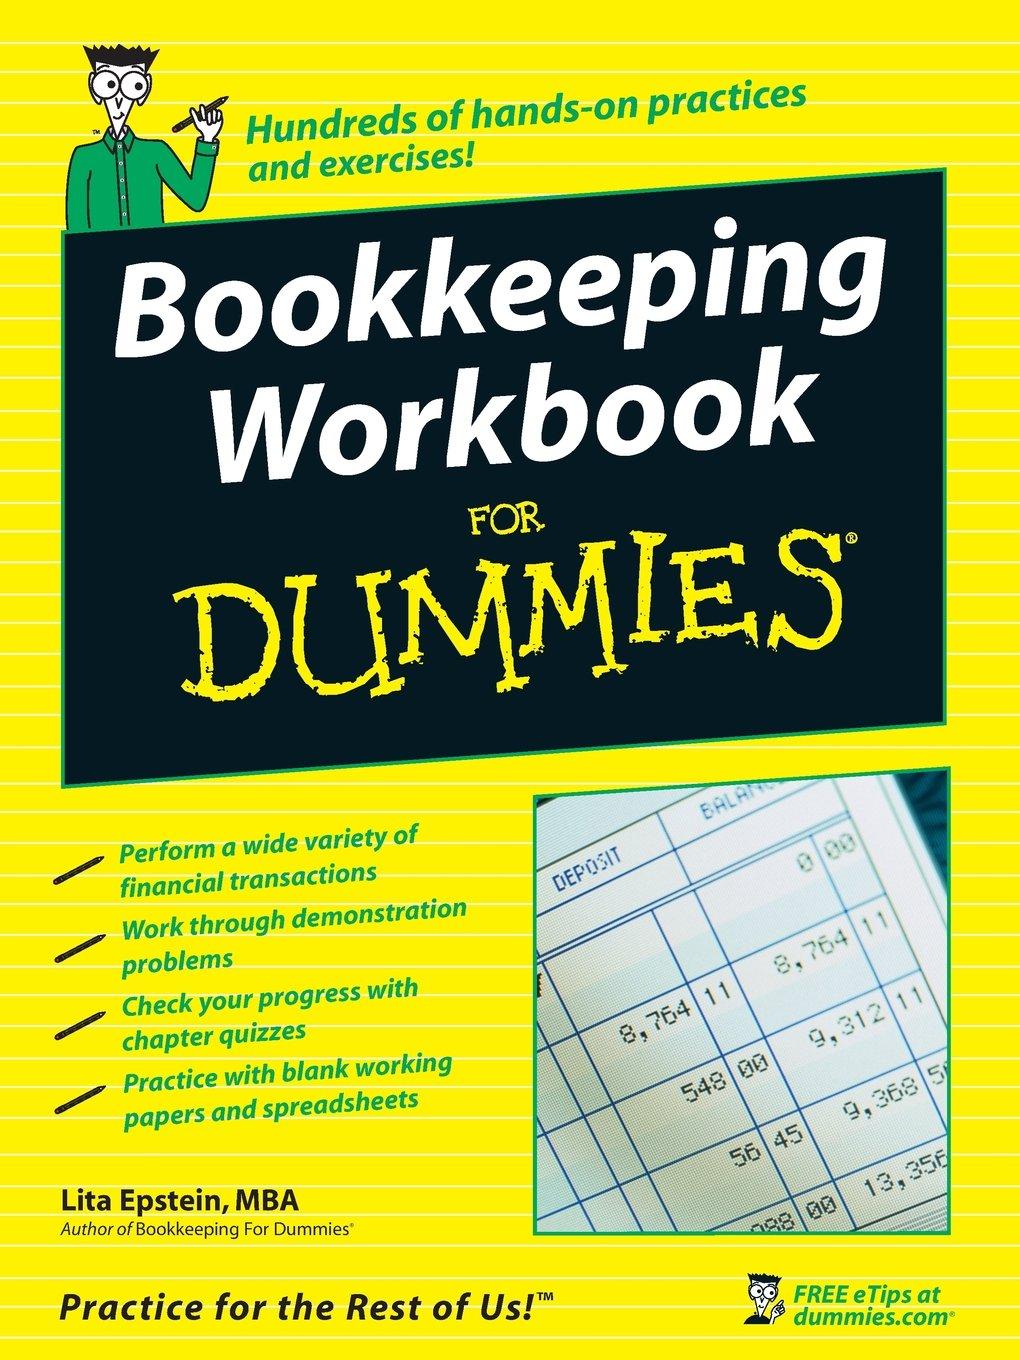 bookkeeping workbook for dummies 1st edition lita epstein 0470169834, 978-0470169834